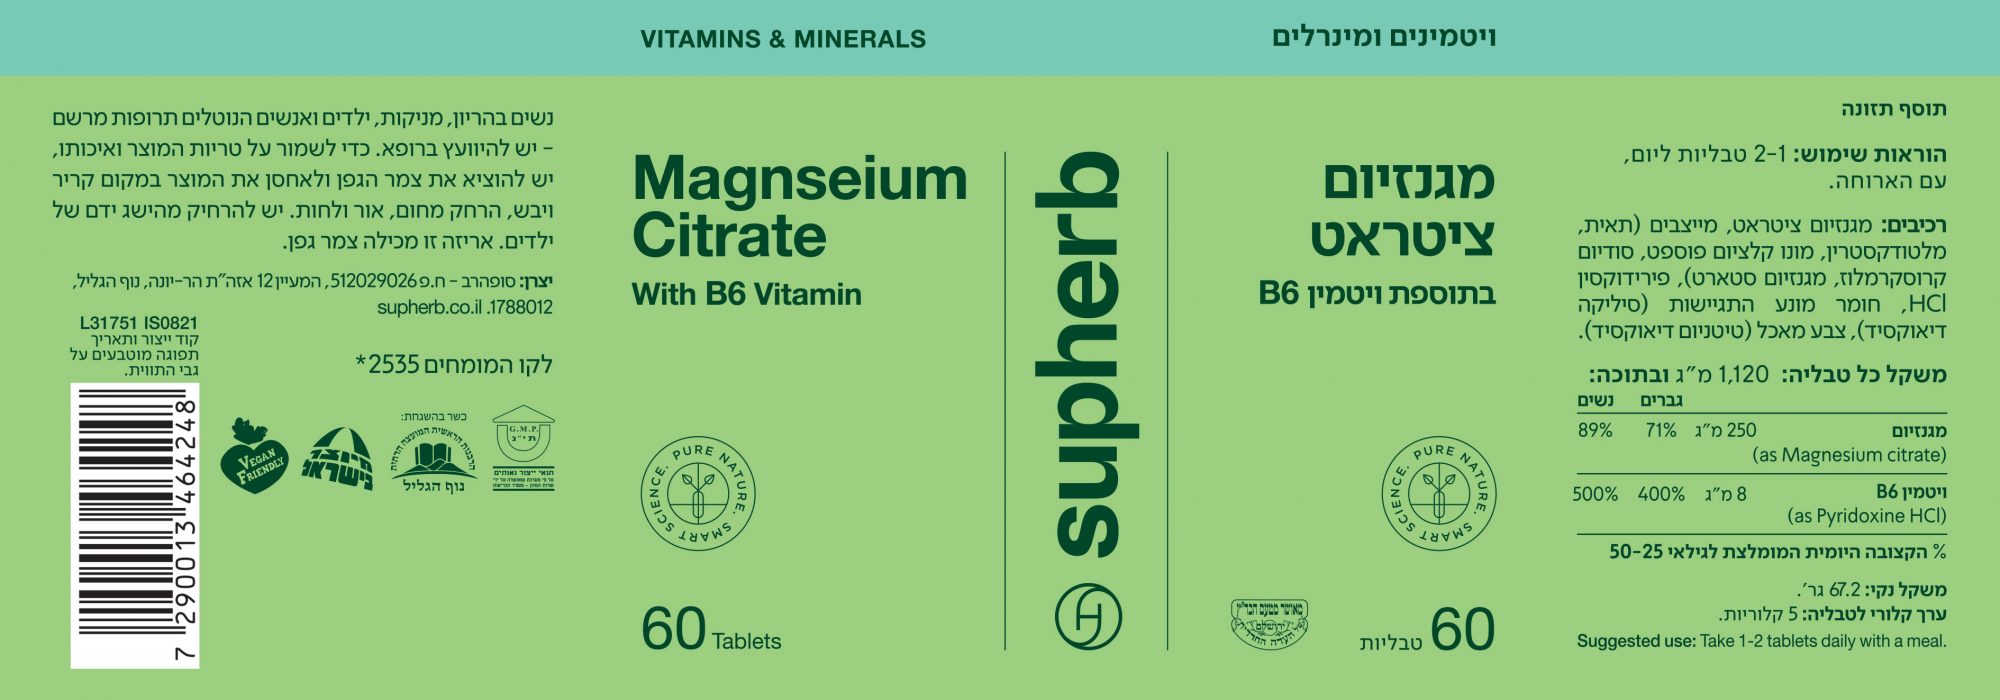 מגנזיום ציטראט בתוספת ויטמין B6